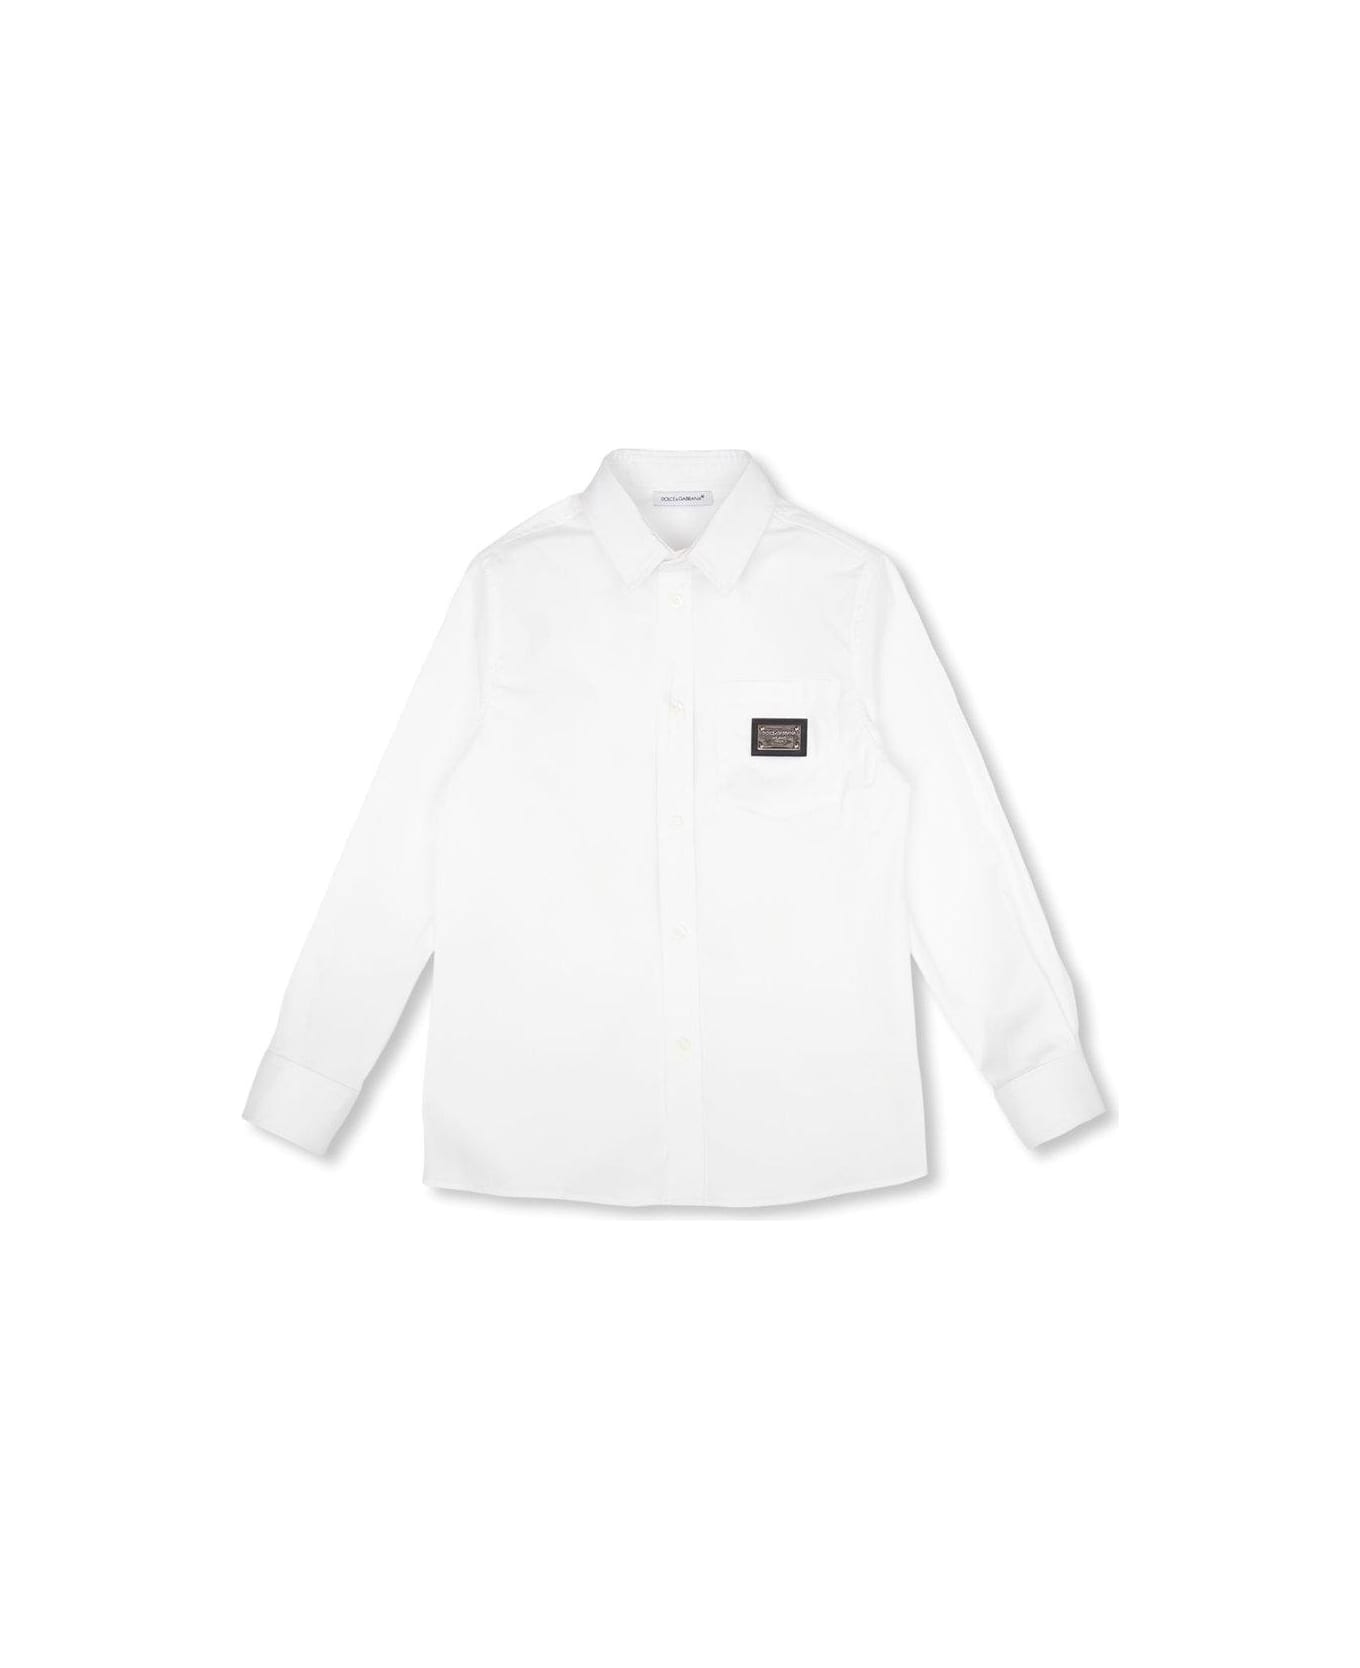 Dolce & Gabbana Buttoned Long-sleeved Shirt